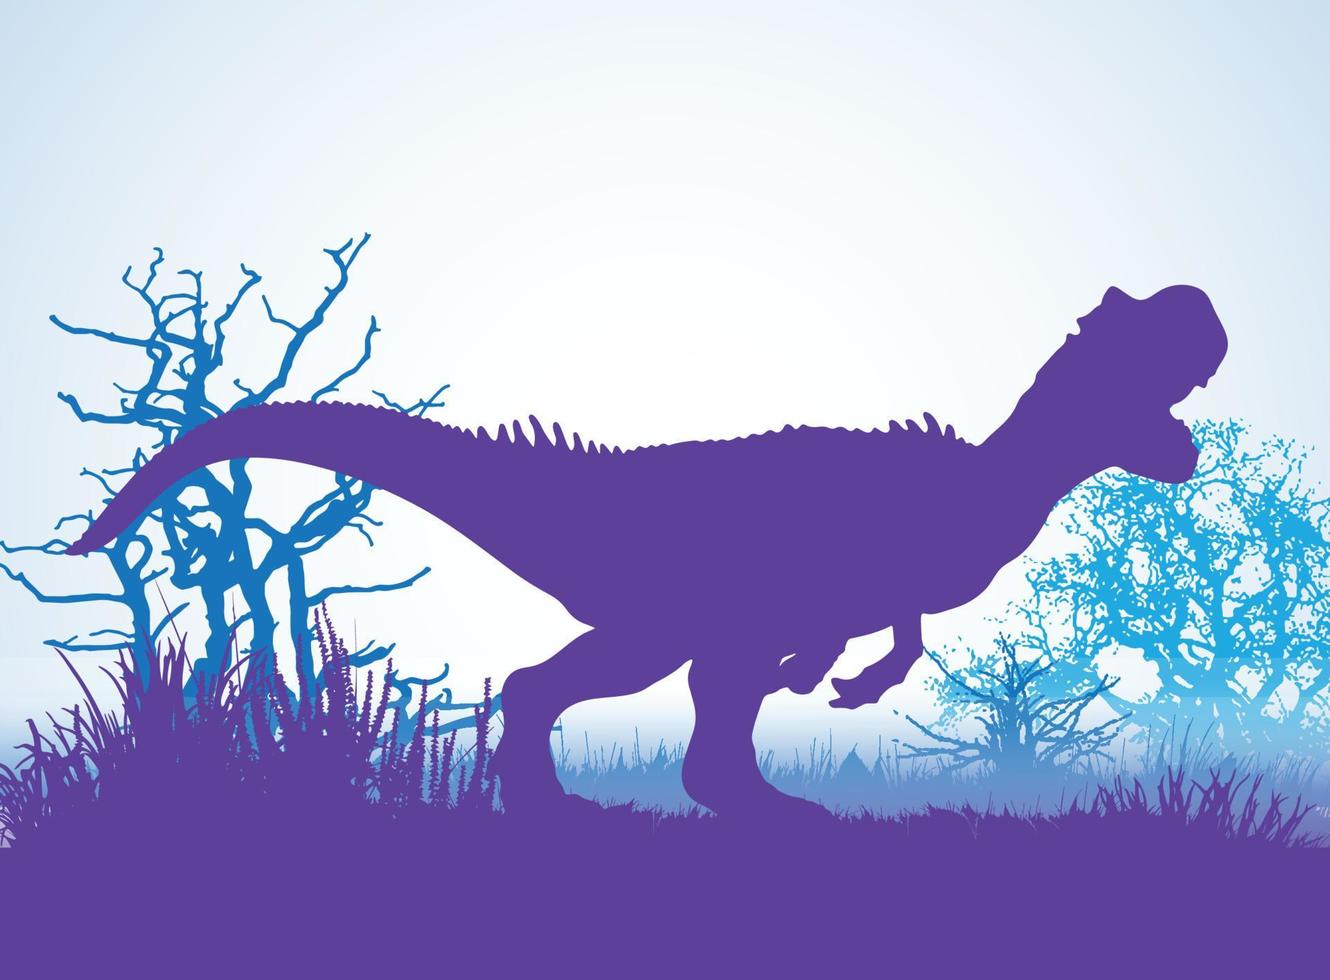 allosaurus, dinosaurussen silhouetten in prehistorische omgeving overlappende lagen decoratieve achtergrond banner abstracte vectorillustratie vector